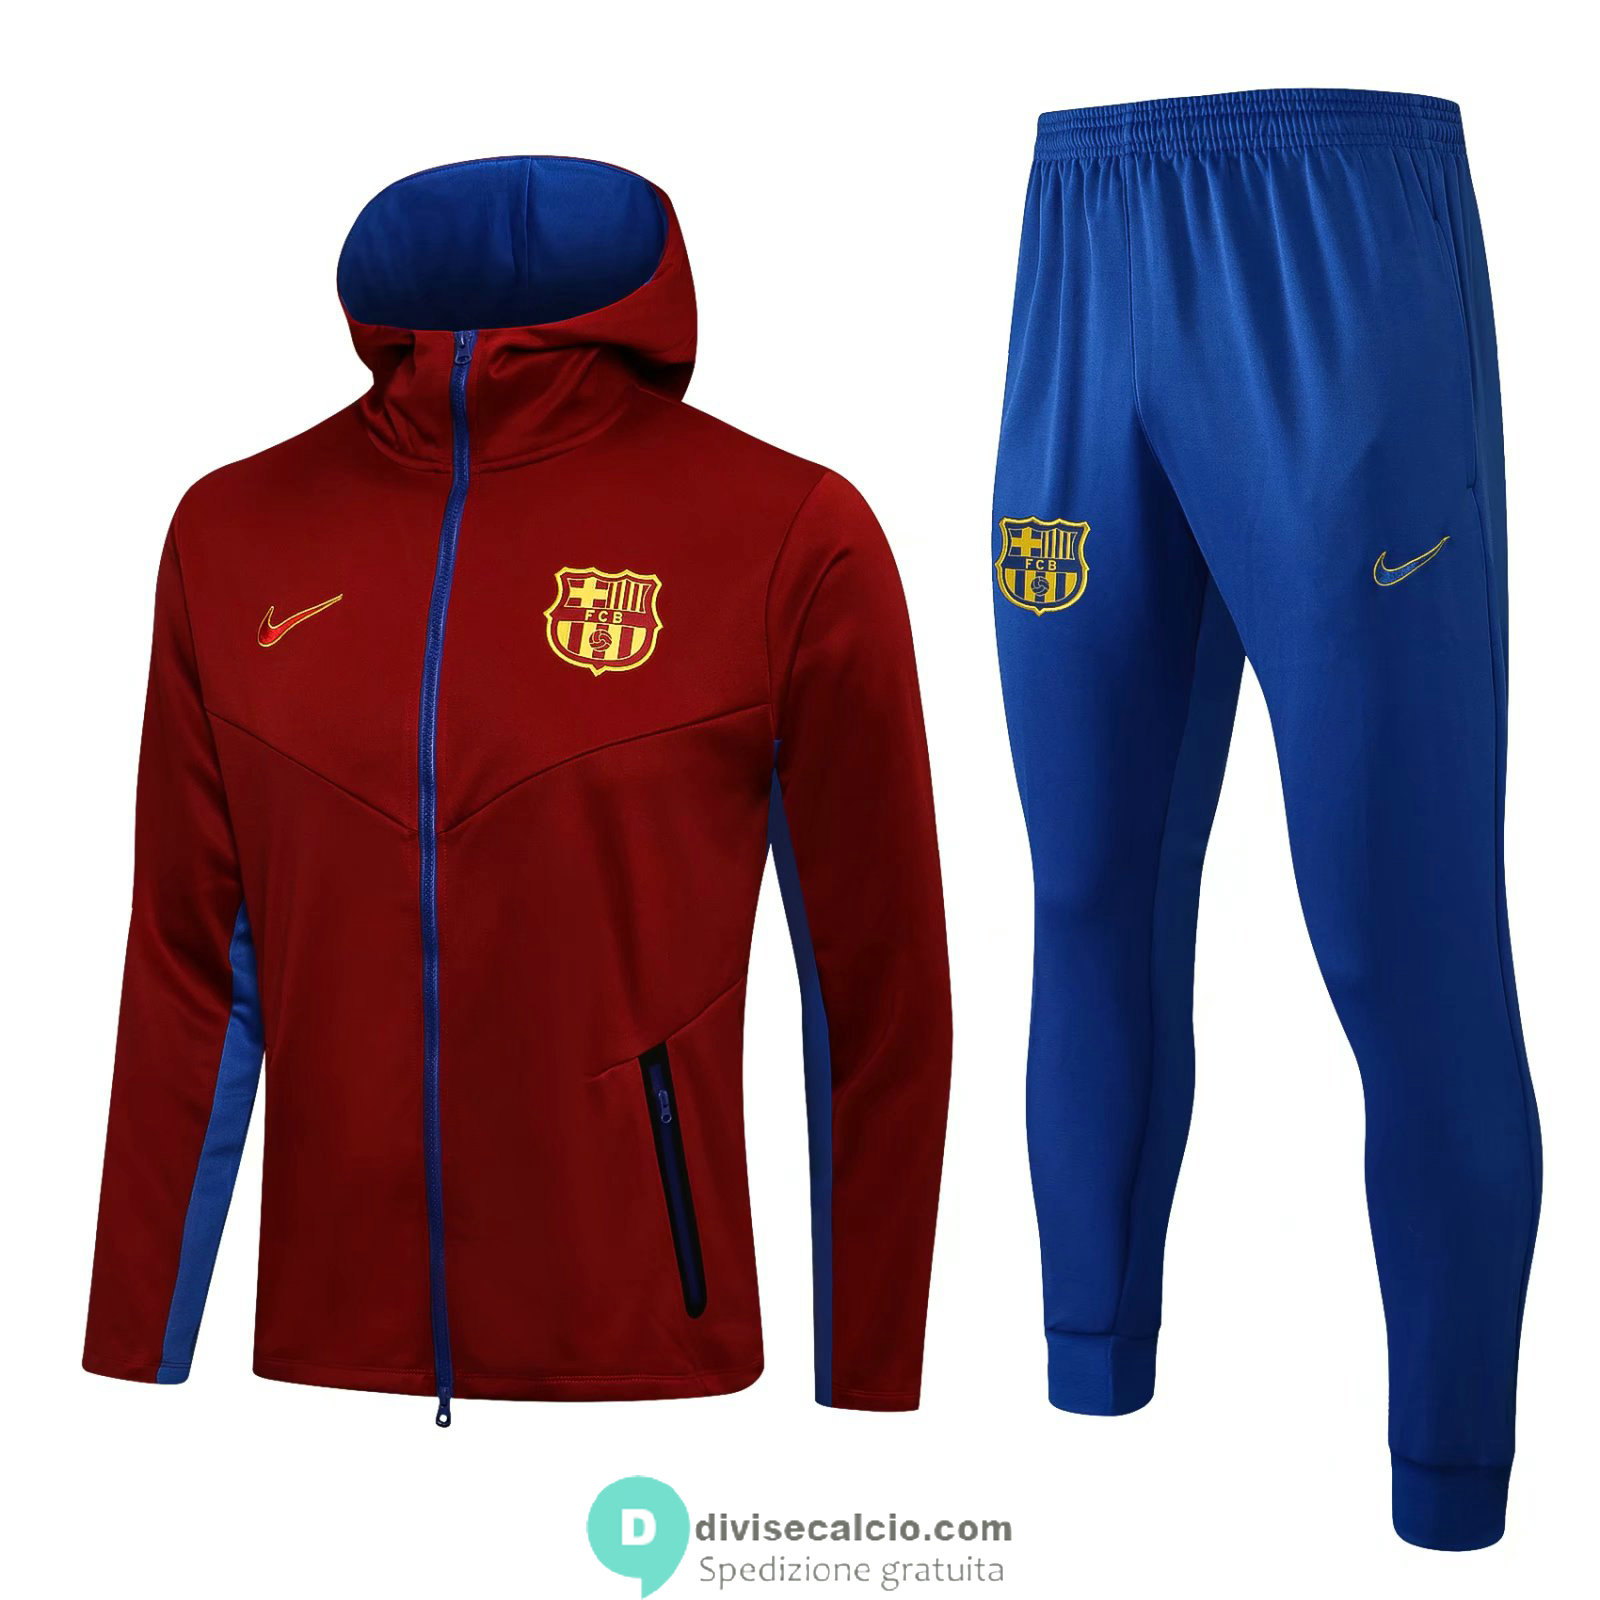 Barcelona Giacca Cappuccio Red + Pantaloni Blue 2021/2022